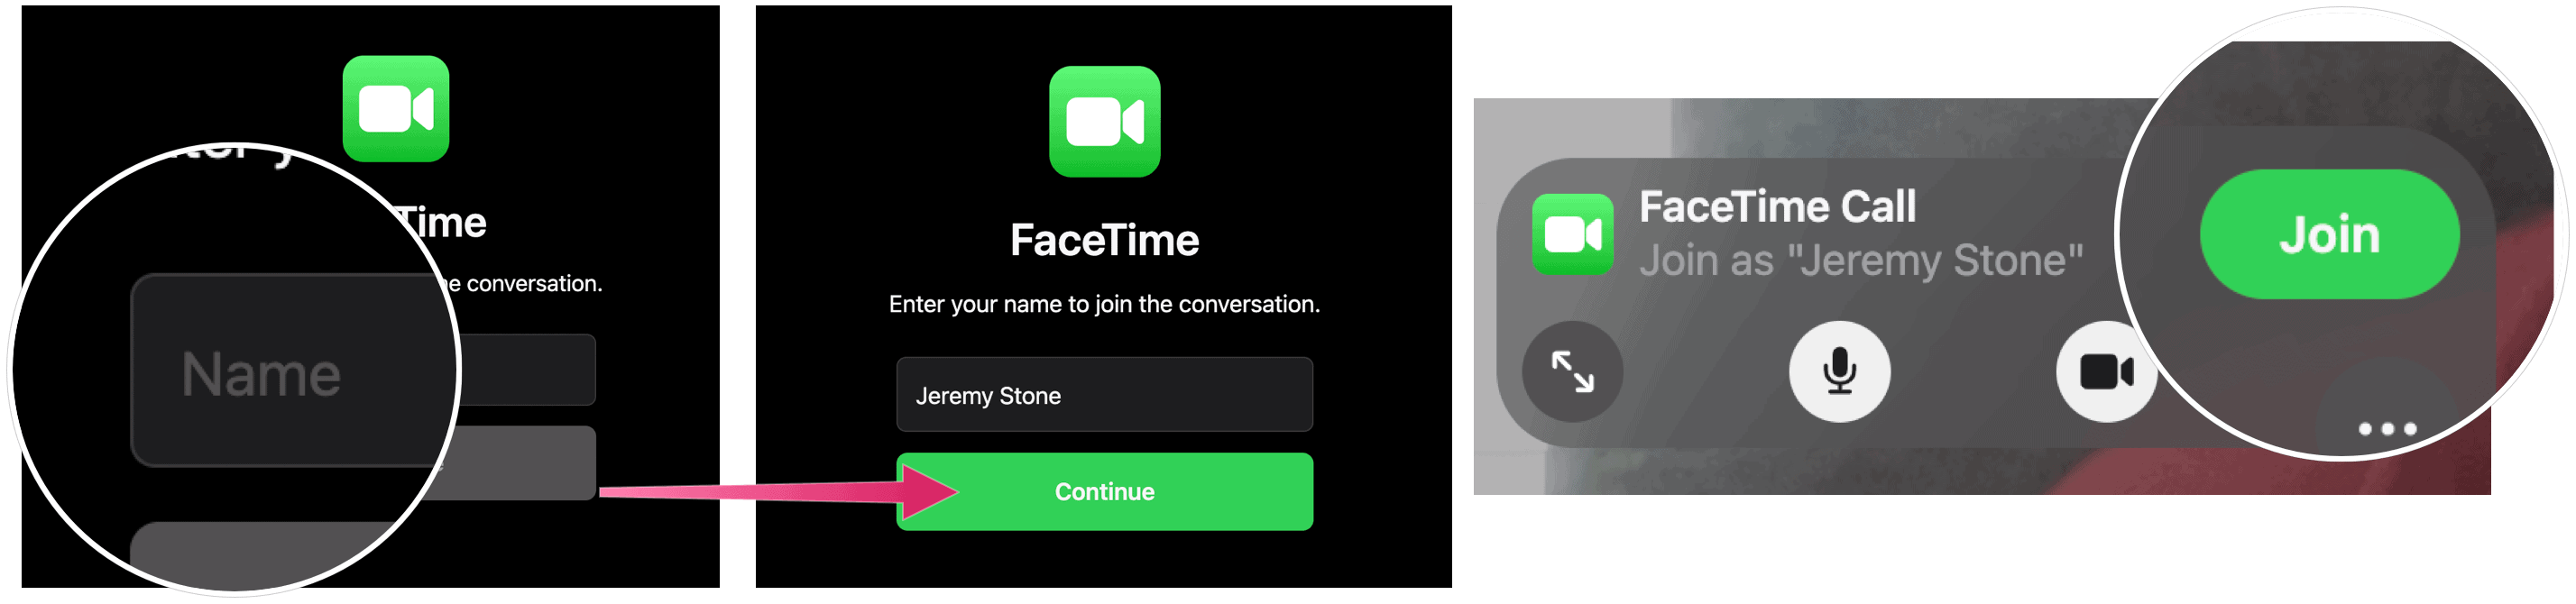 Присоединяйтесь к группе FaceTime